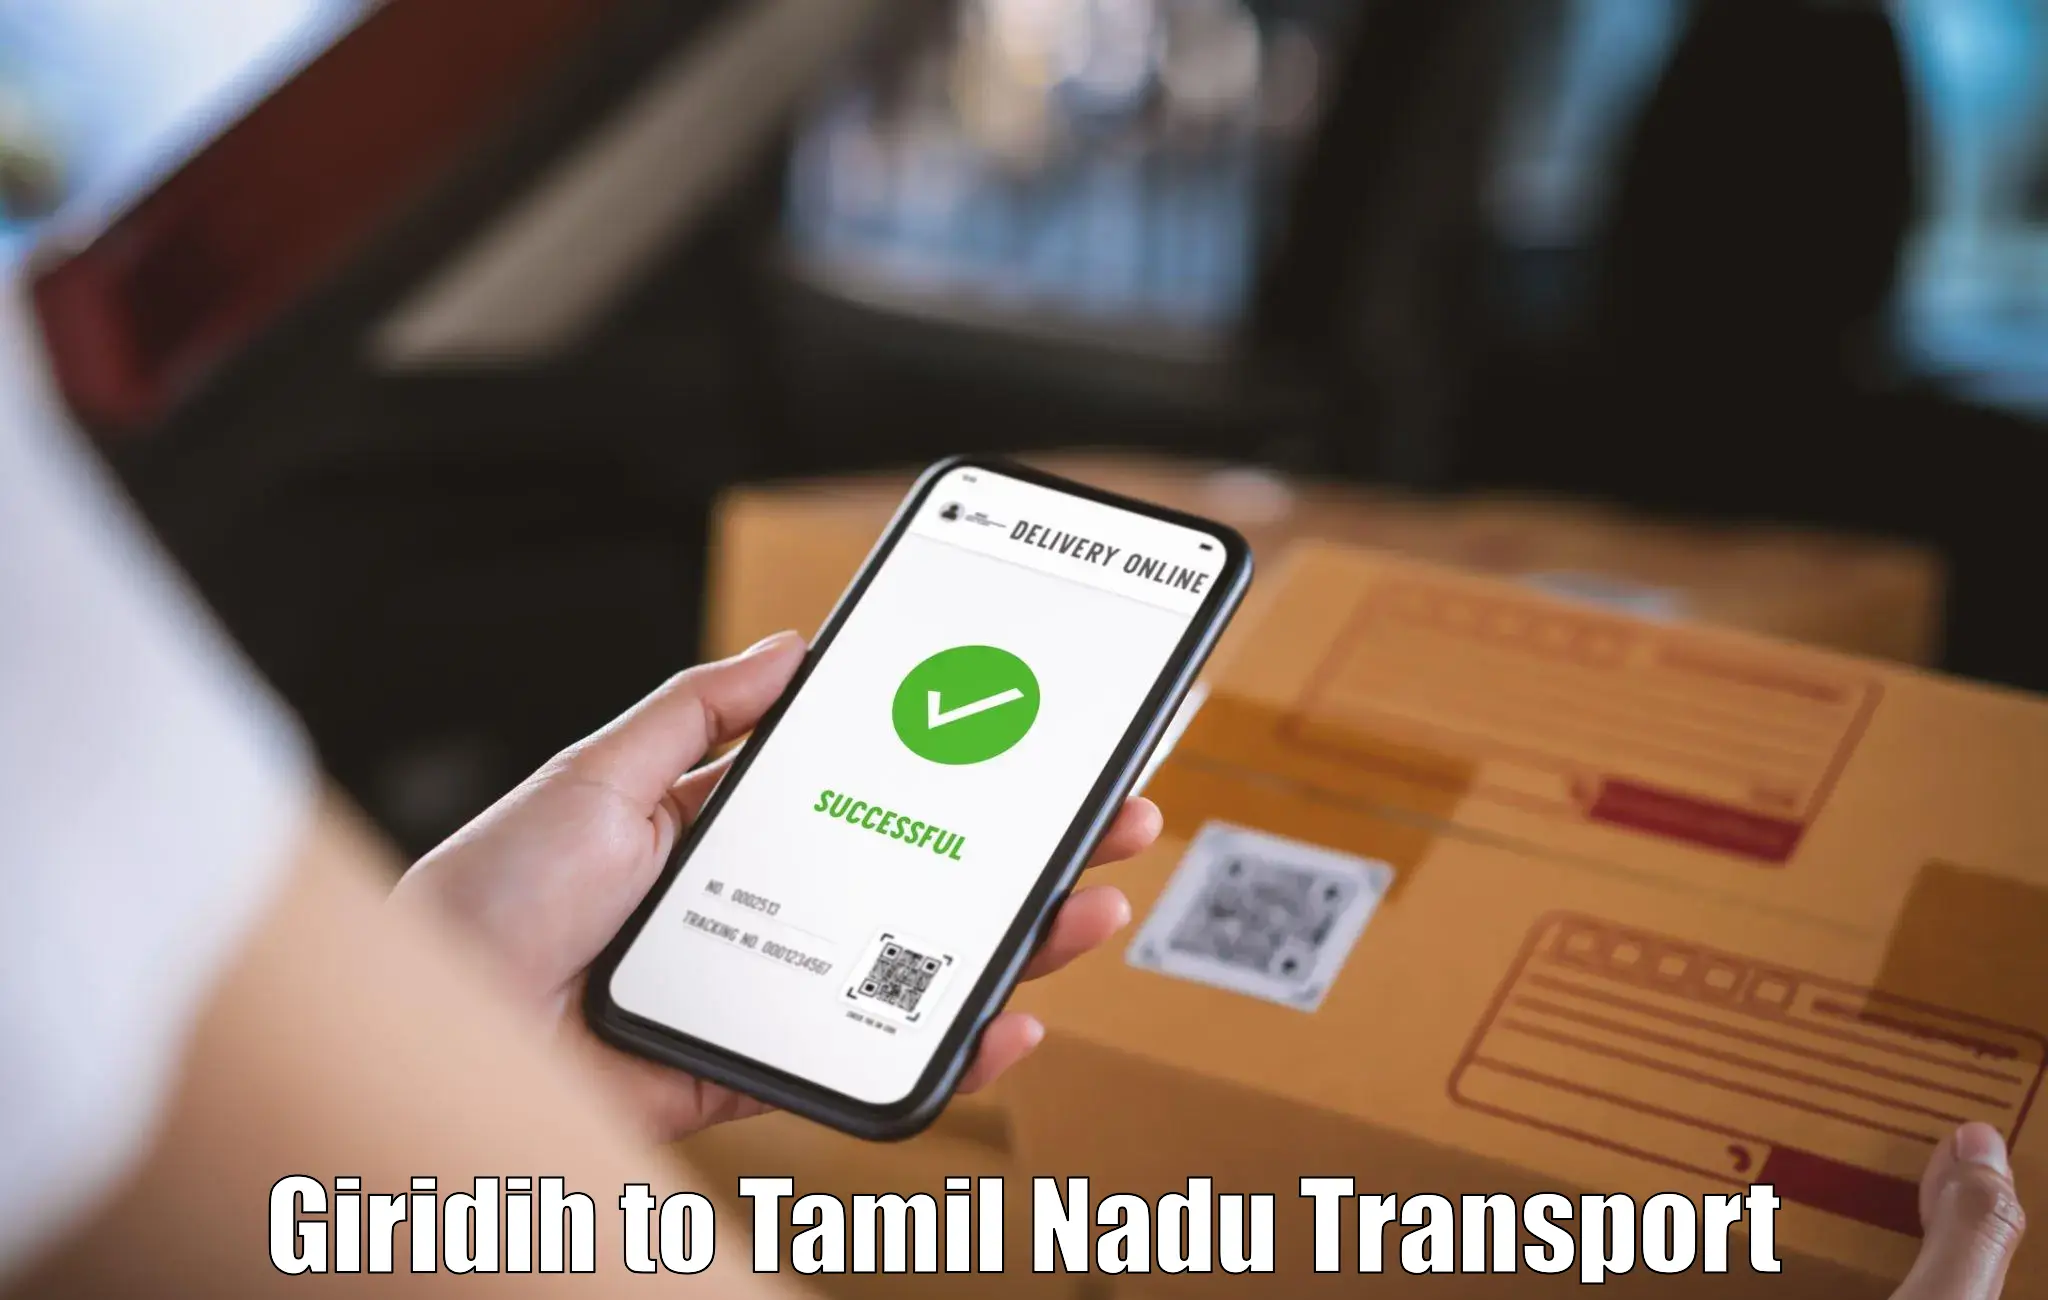 Express transport services Giridih to Tallakulam